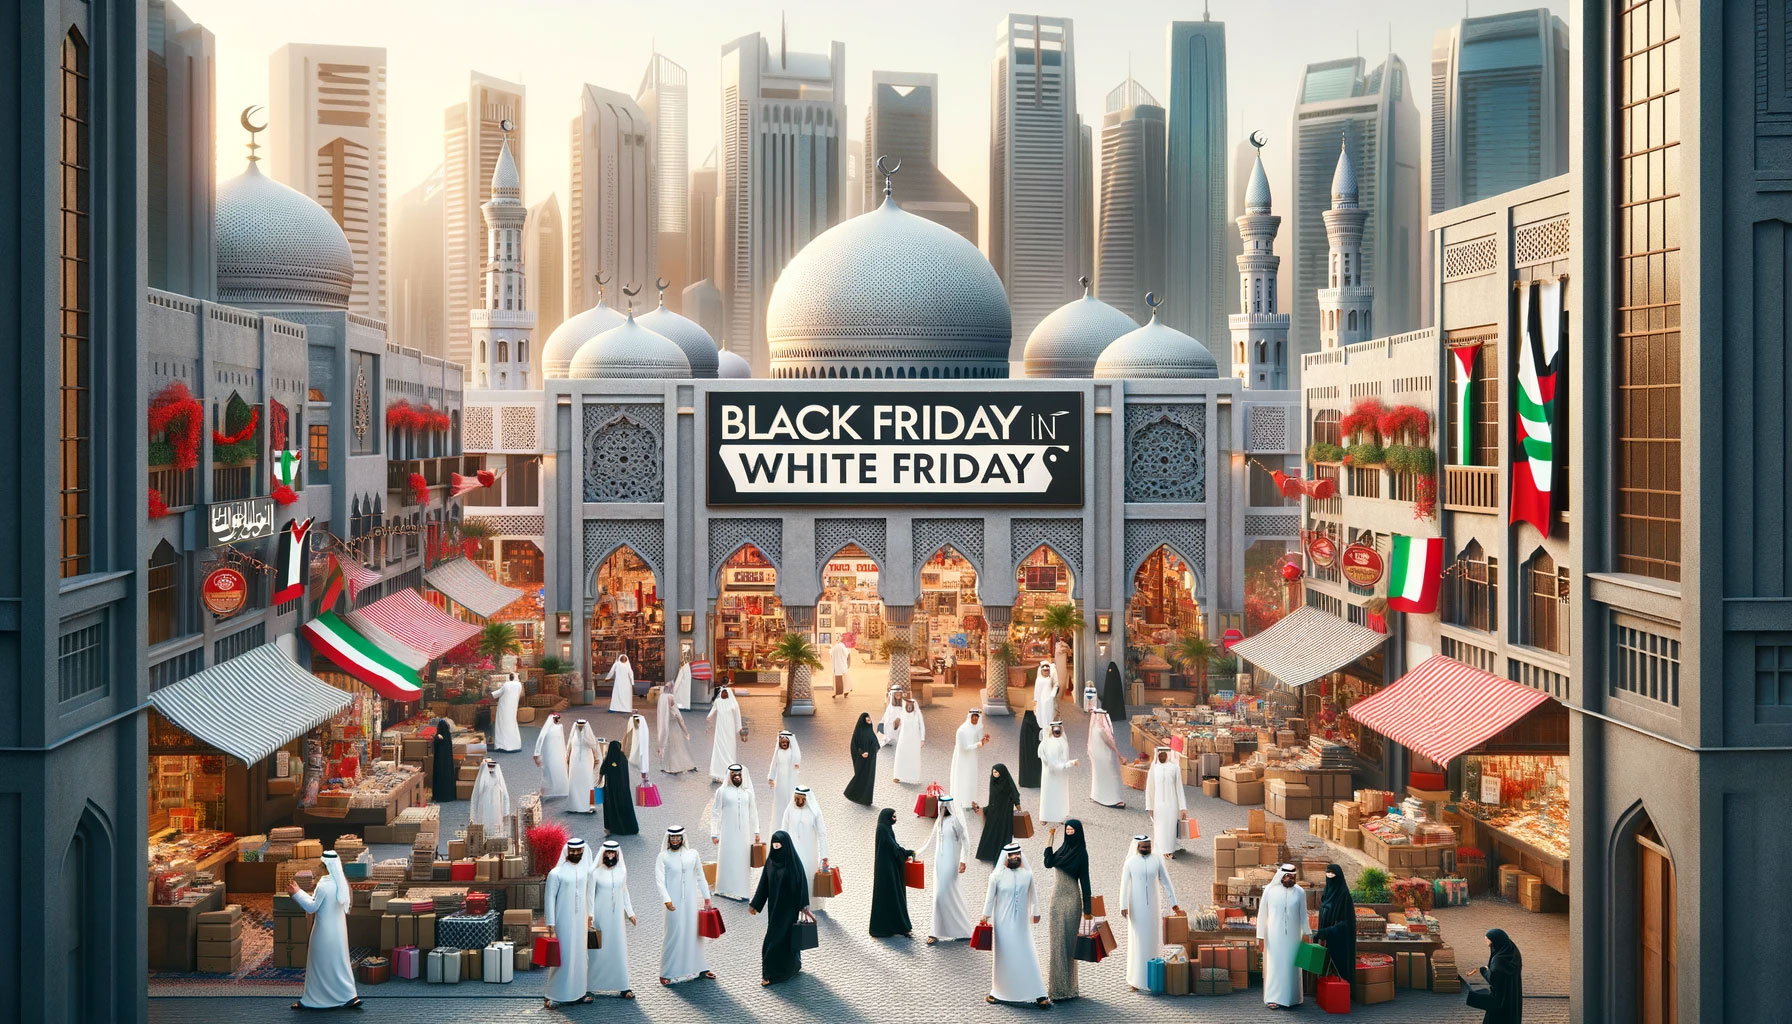 Black Friday in GCC (White Friday)